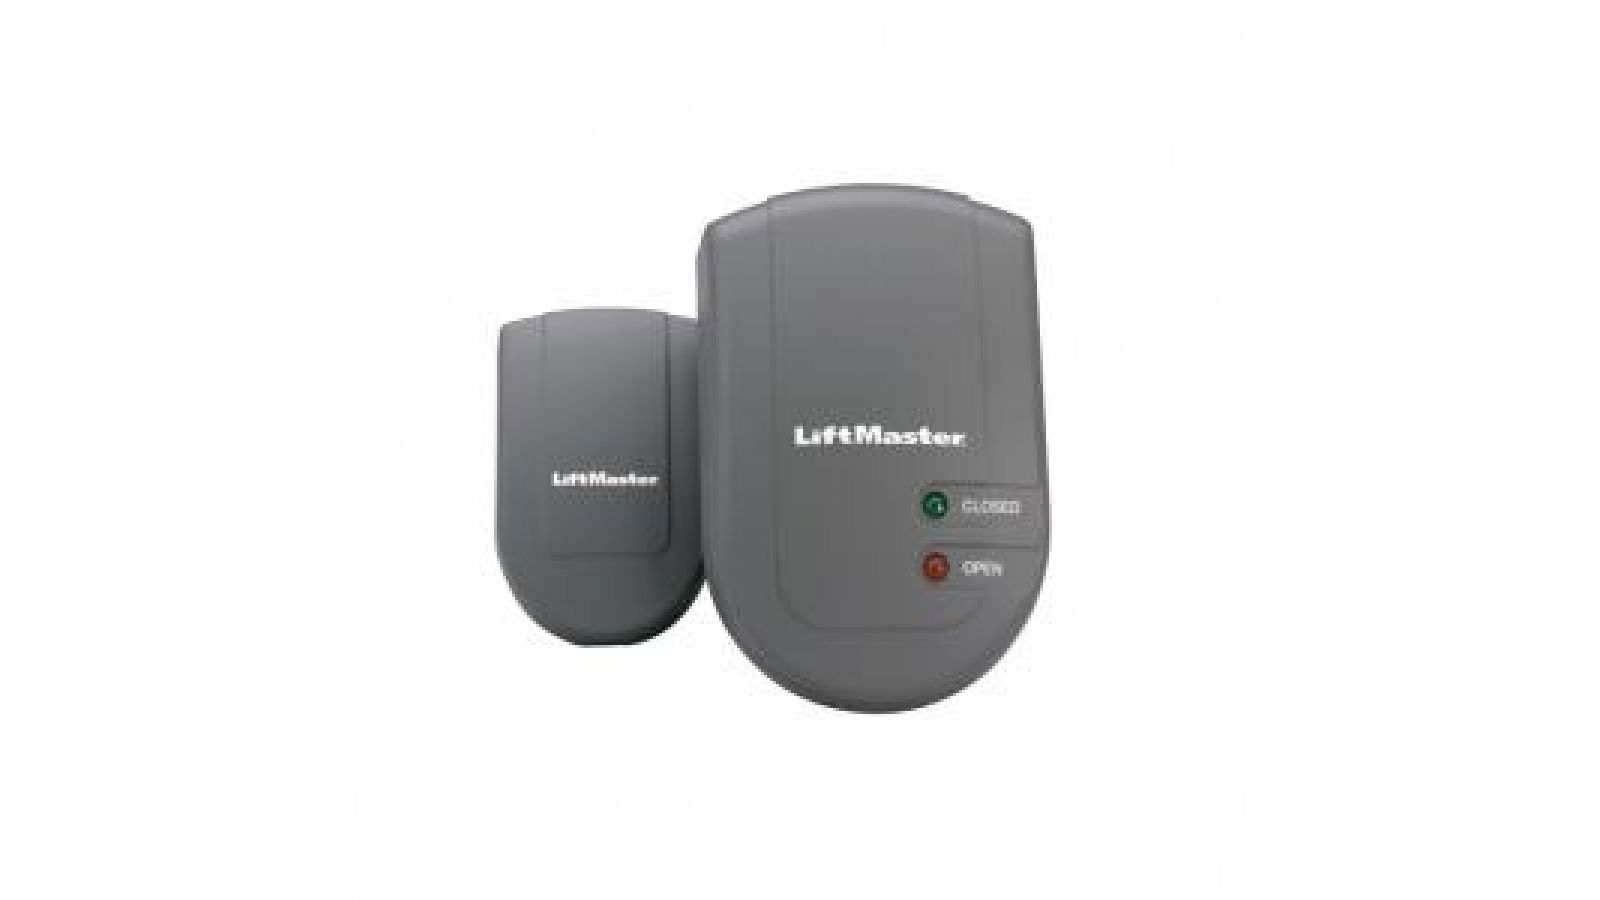 The LiftMaster Garage Door Monitor